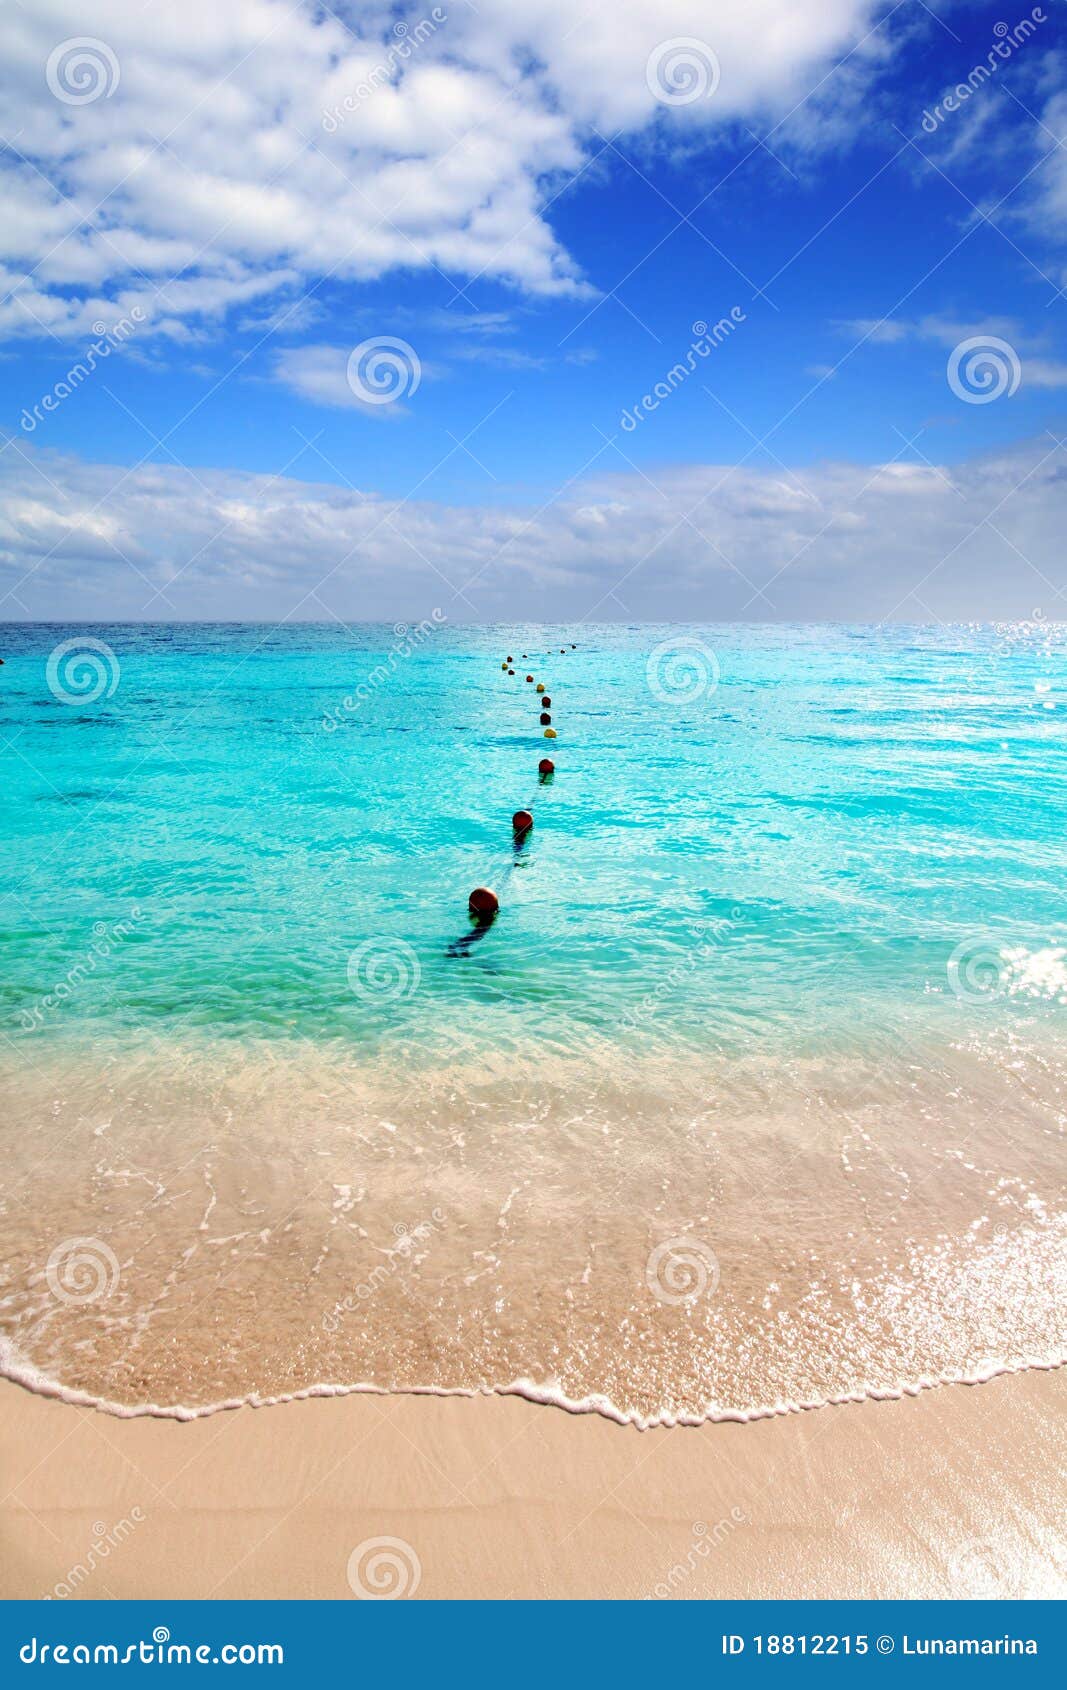 caribbean tropical turquoise beach blue sky